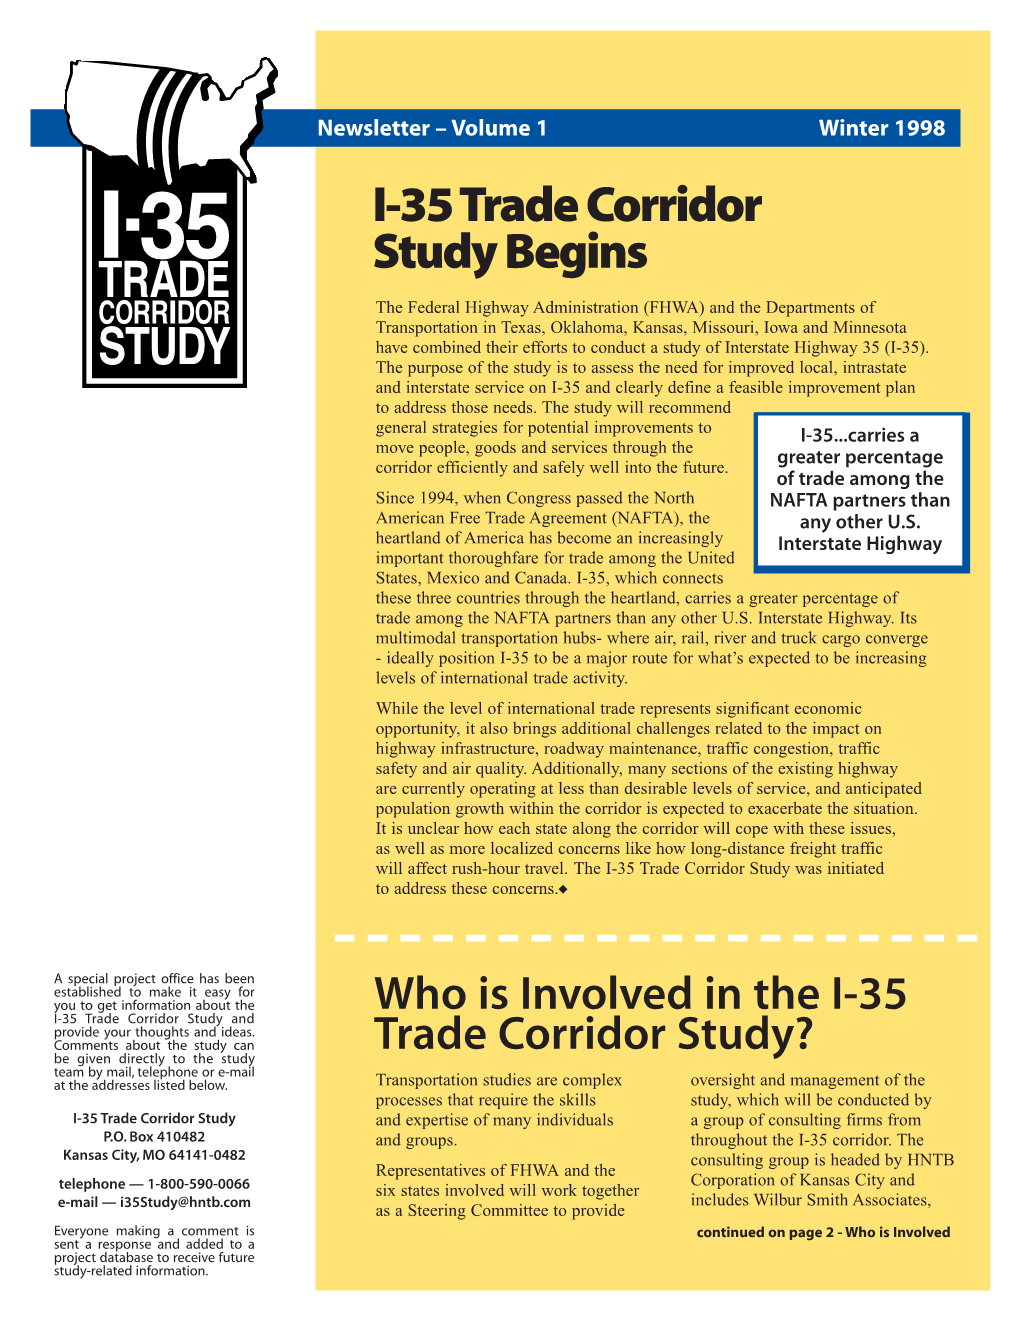 I-35 Trade Corridor Study Begins